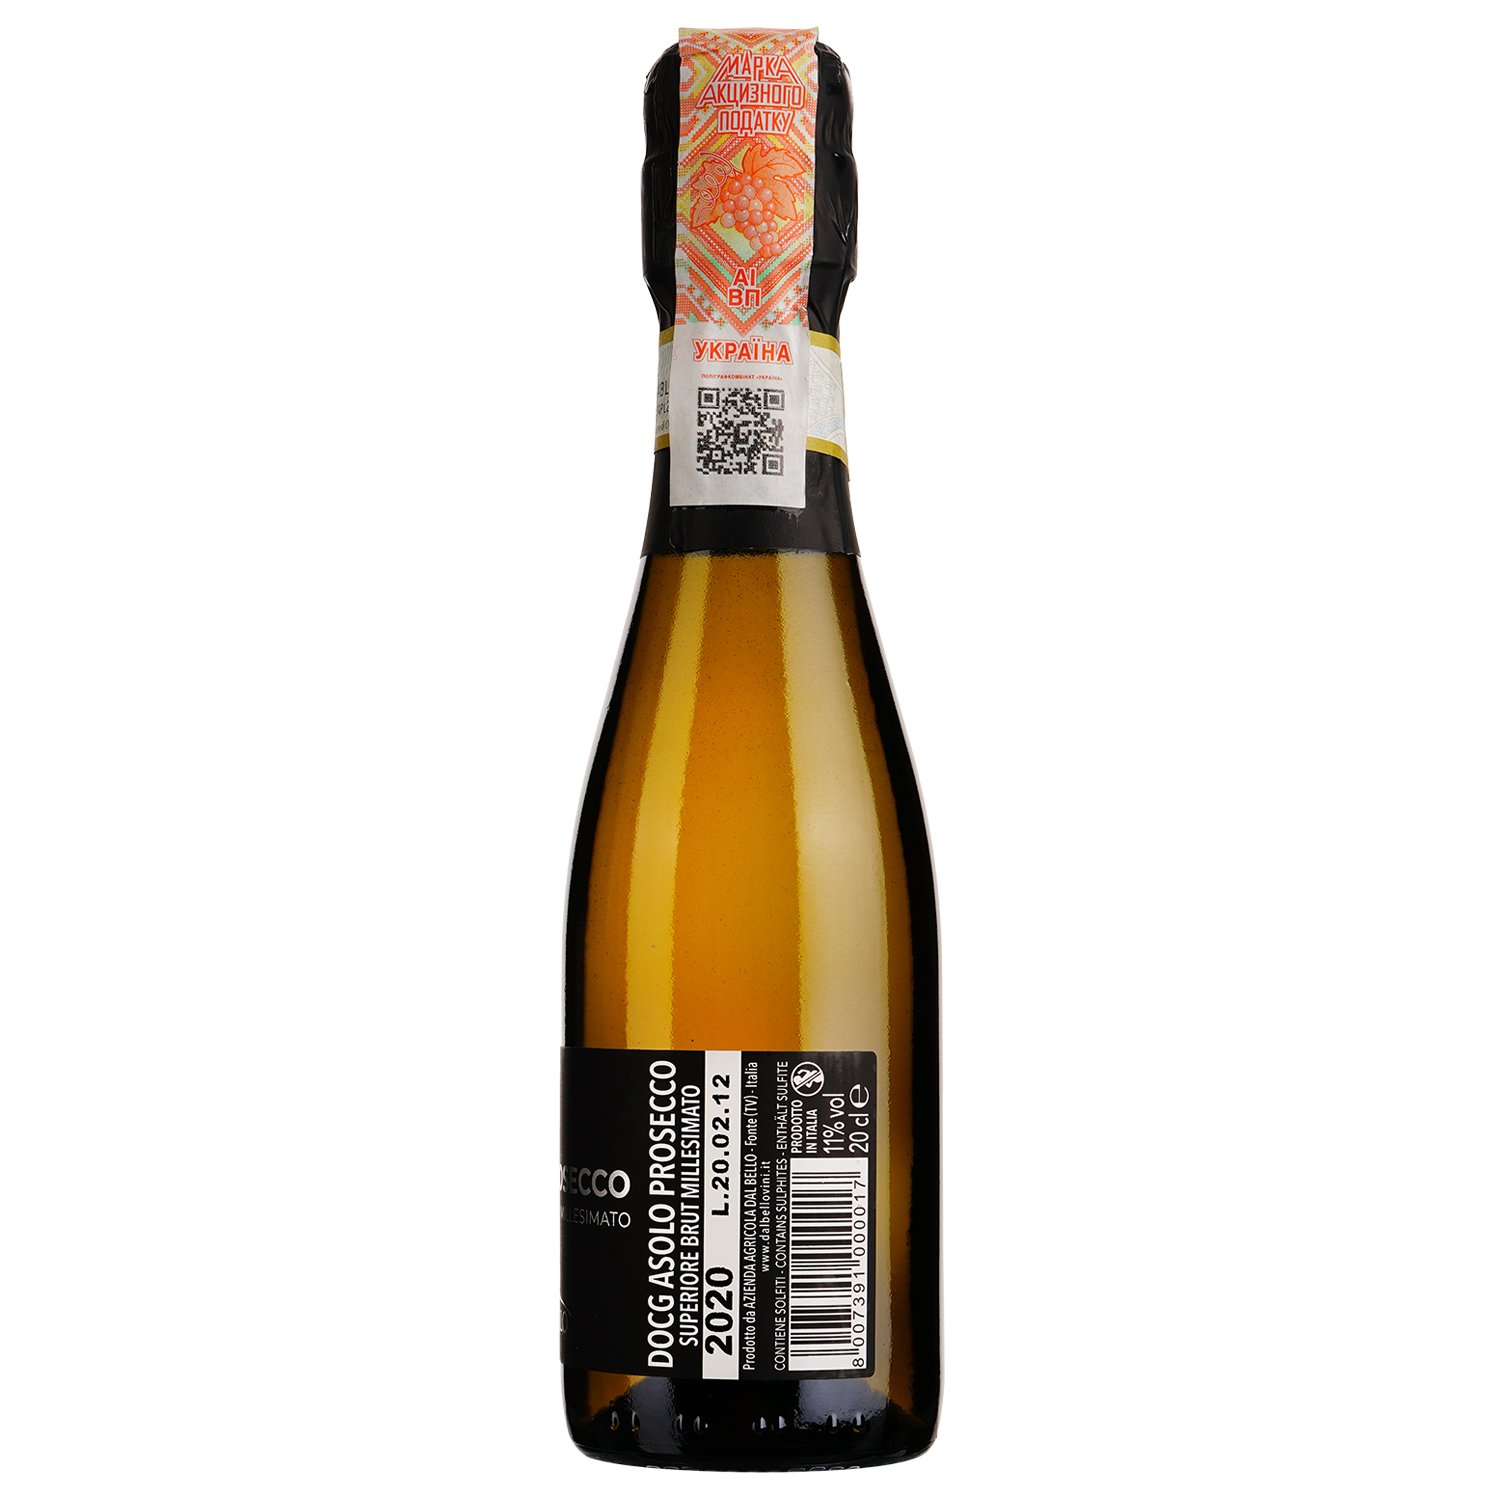 Игристое вино Dal Bello Oro della Regina Asolo Prosecco Superiore Brut, белое, брют, 11%, 0,2 л - фото 2